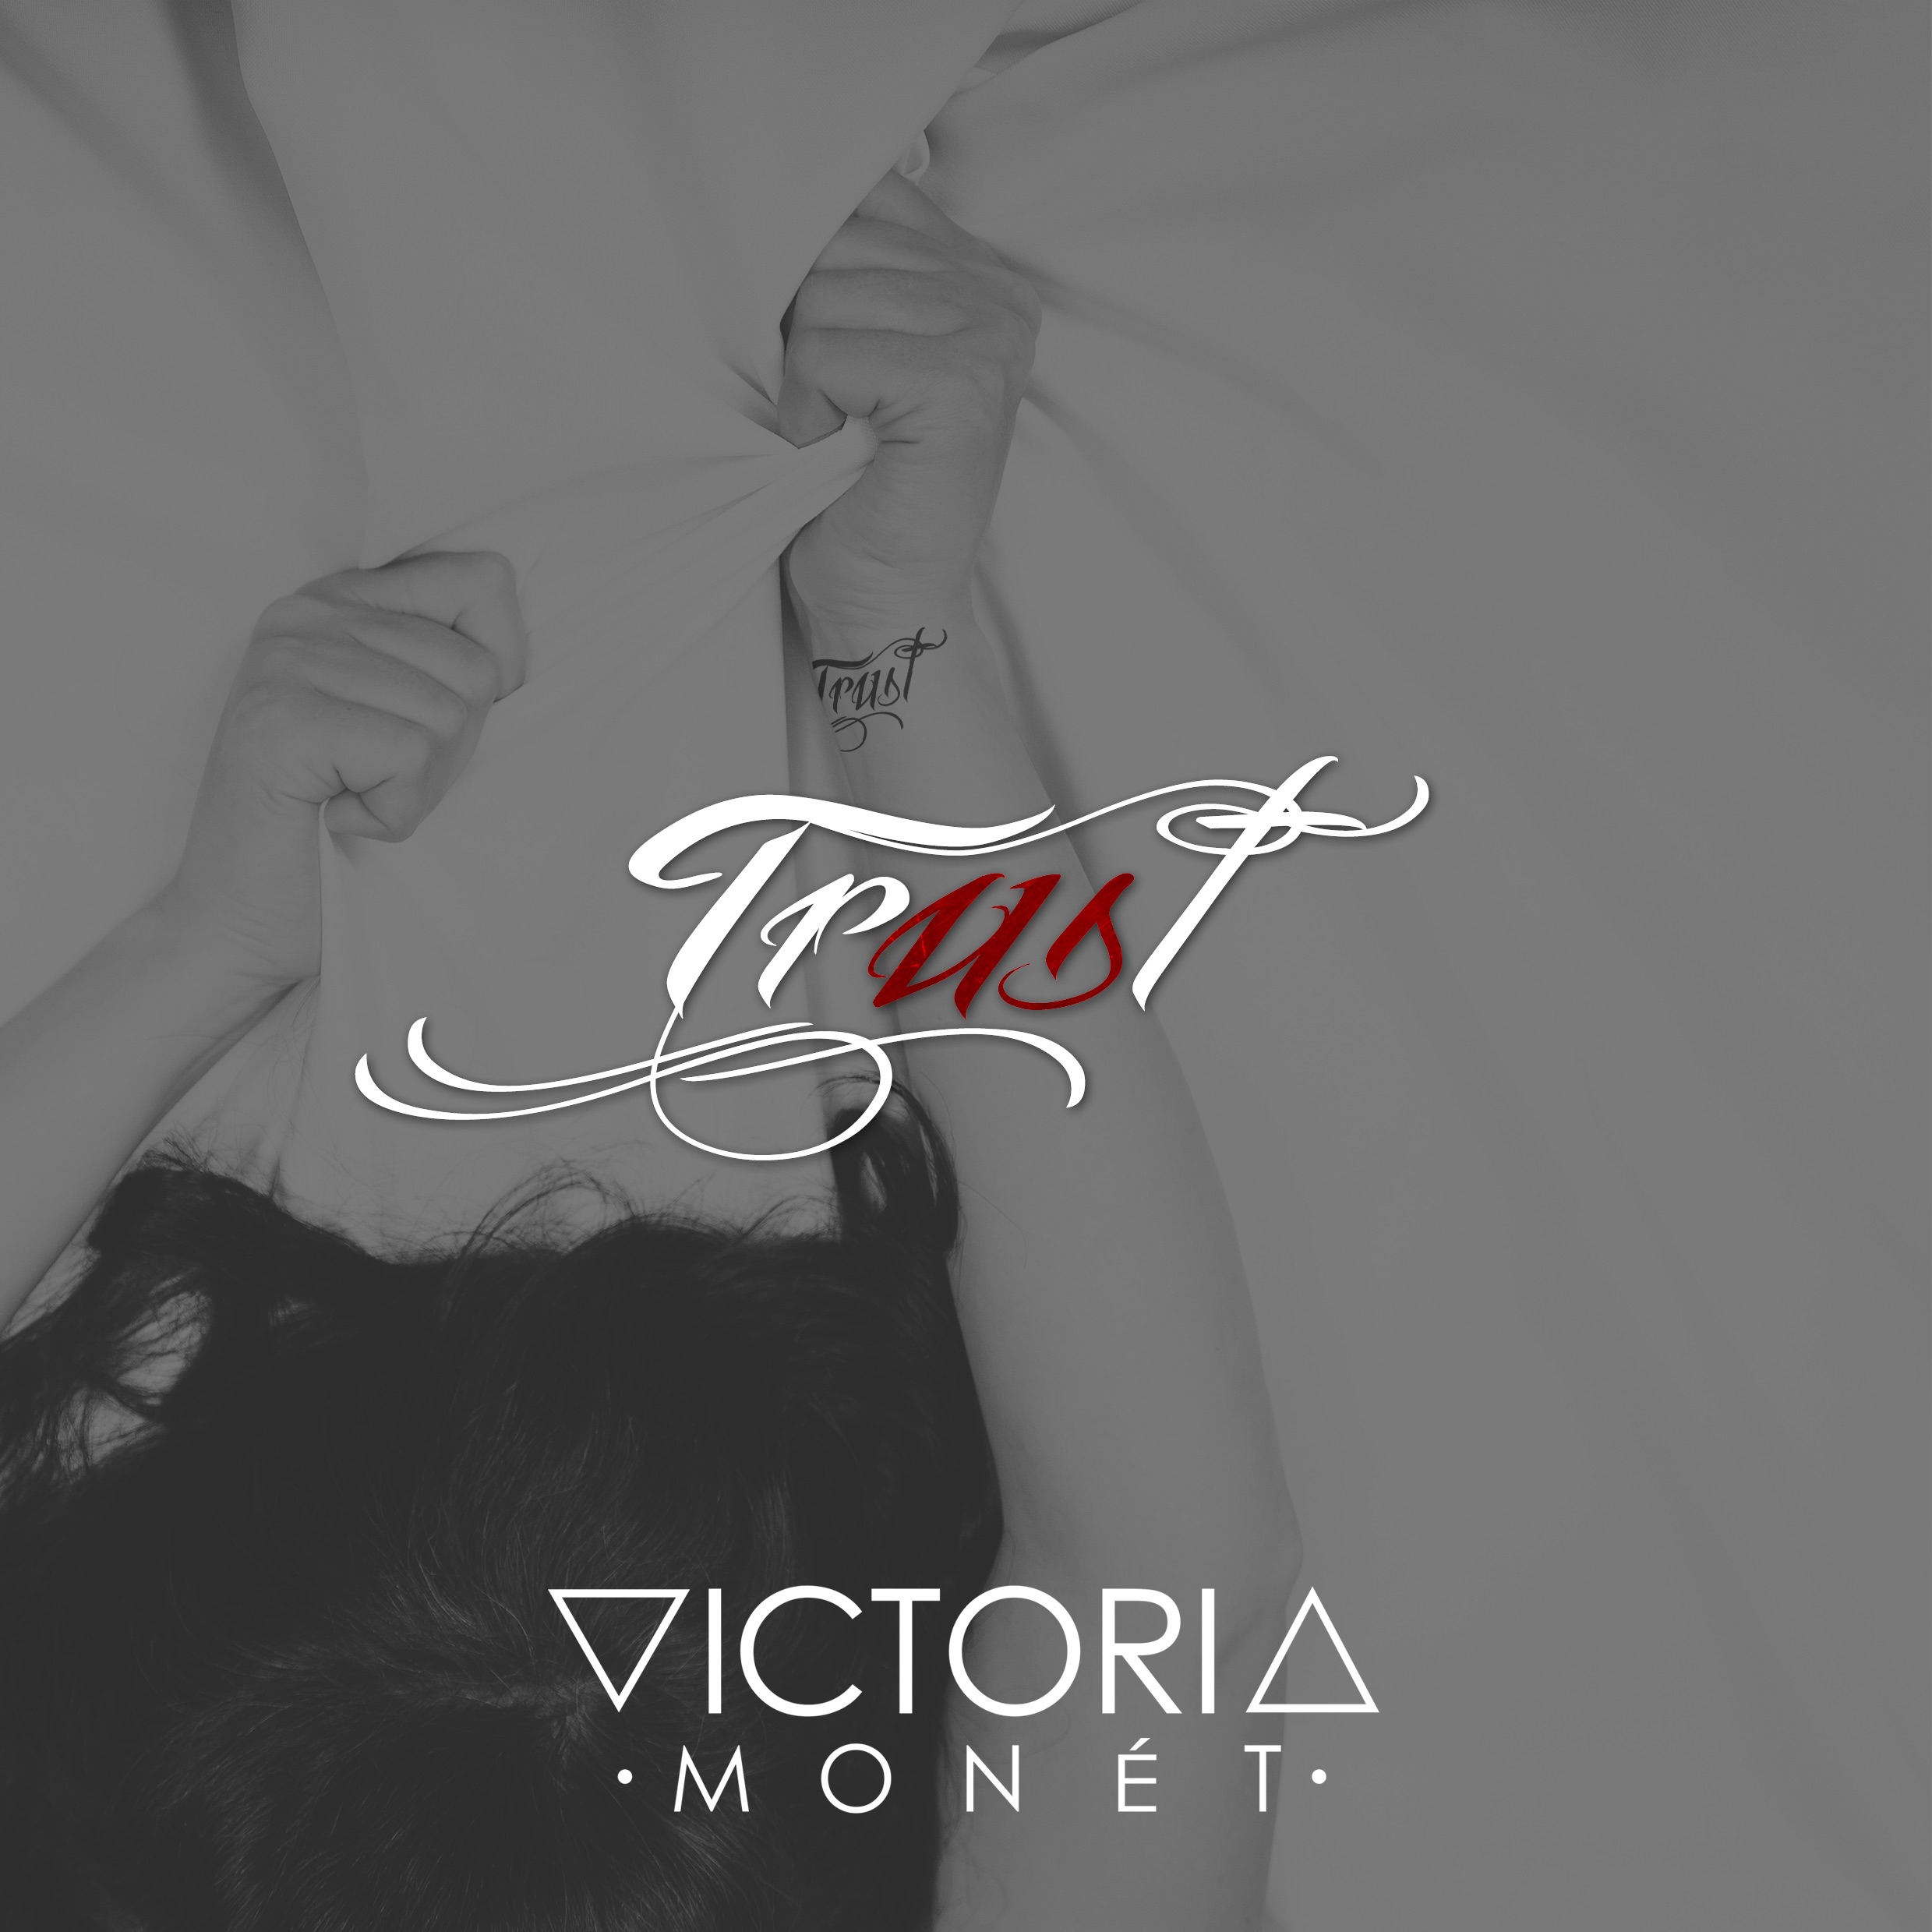 victoria-monet-trust